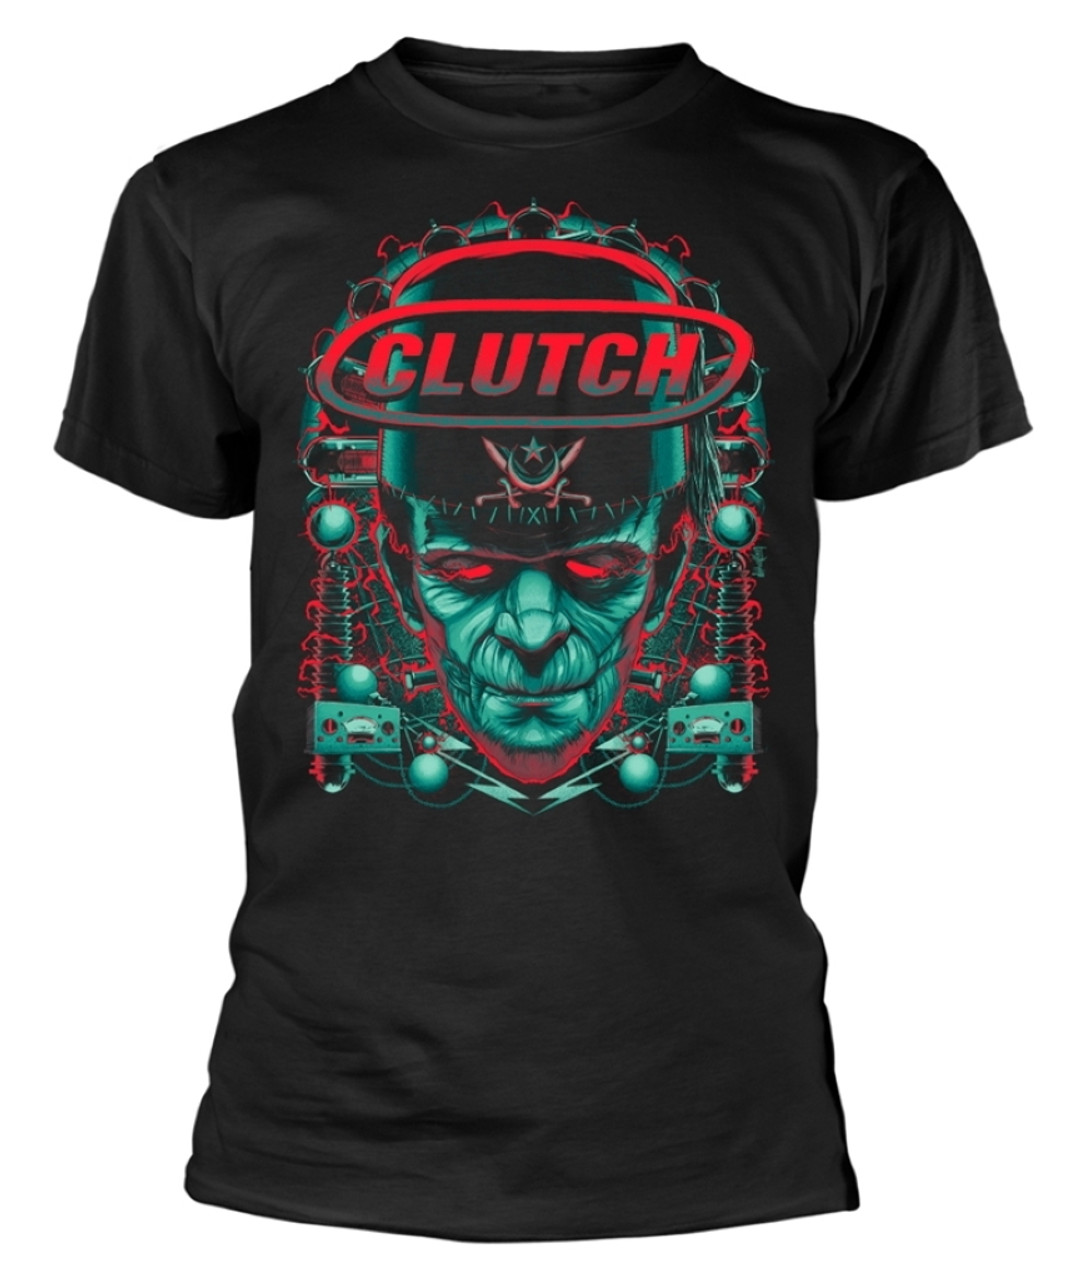 Clutch 'Frankenstein' (Black) T-Shirt